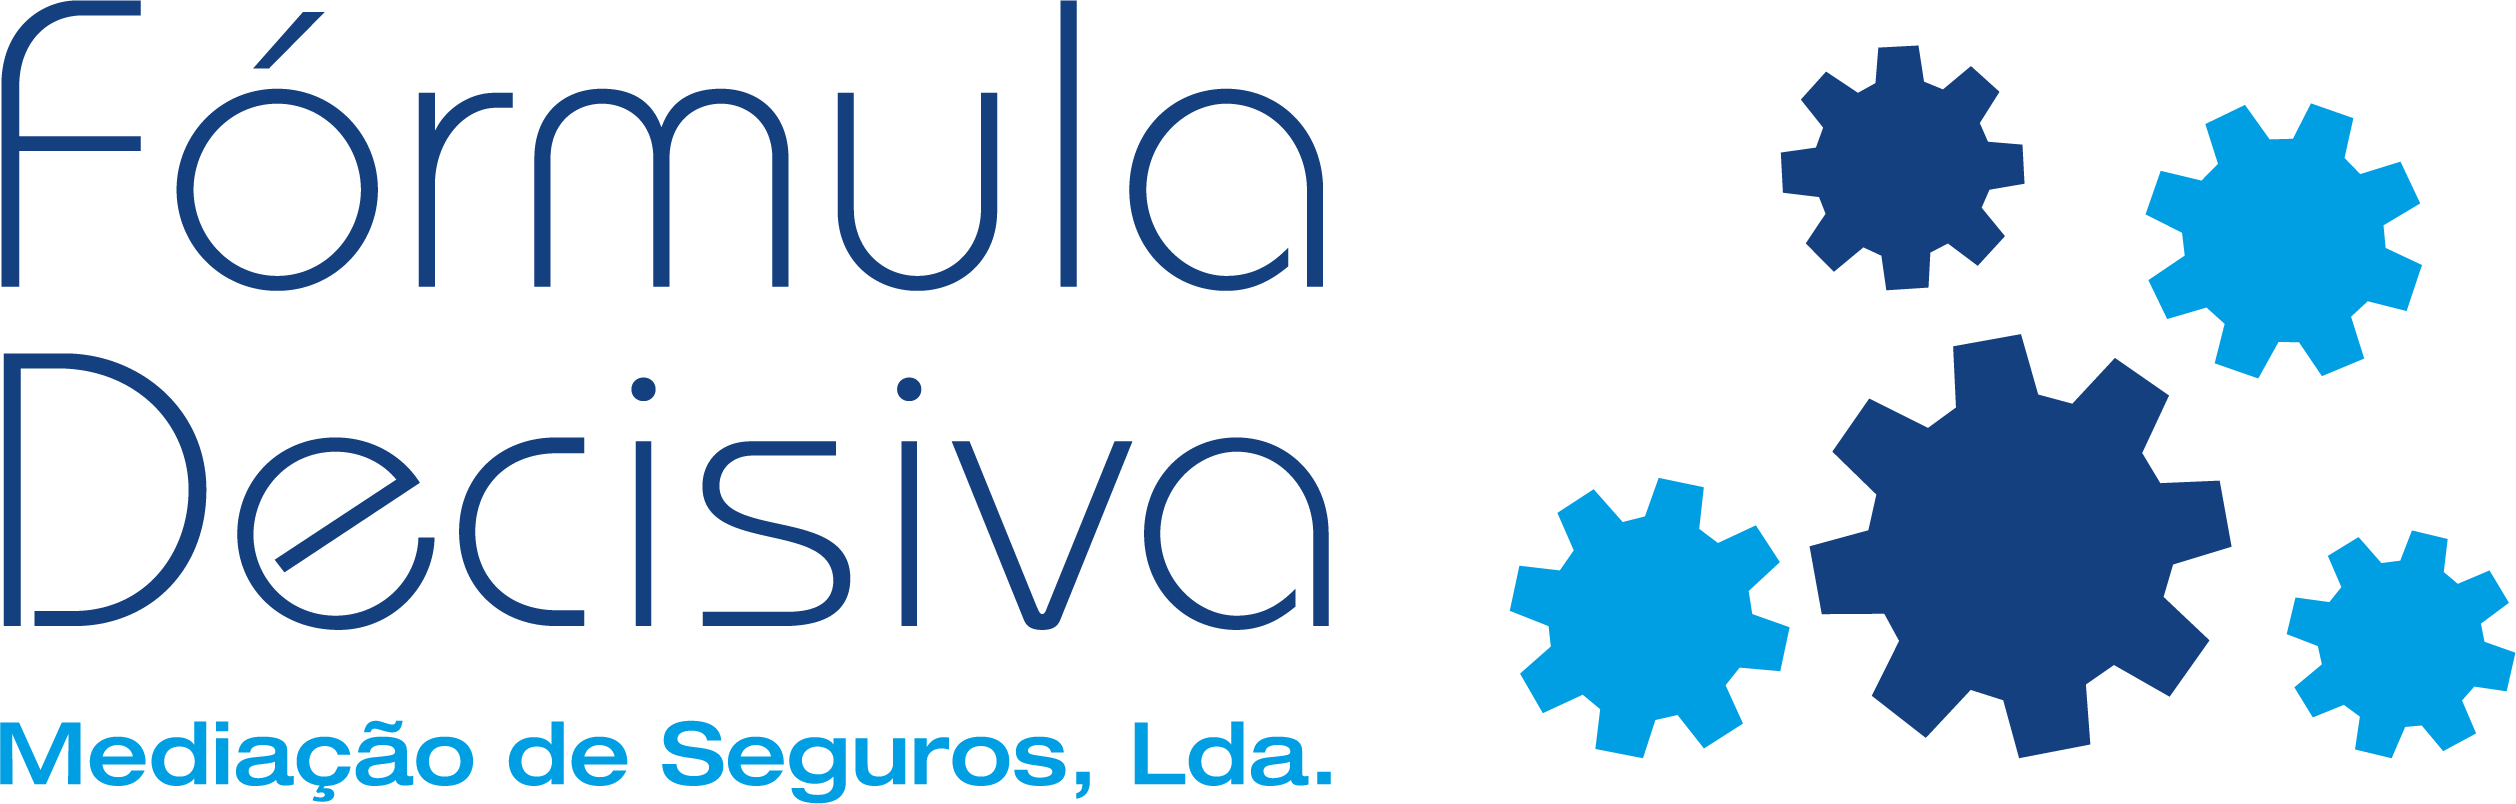 Fórmula Decisiva mediação de seguros Algarve, Portimão